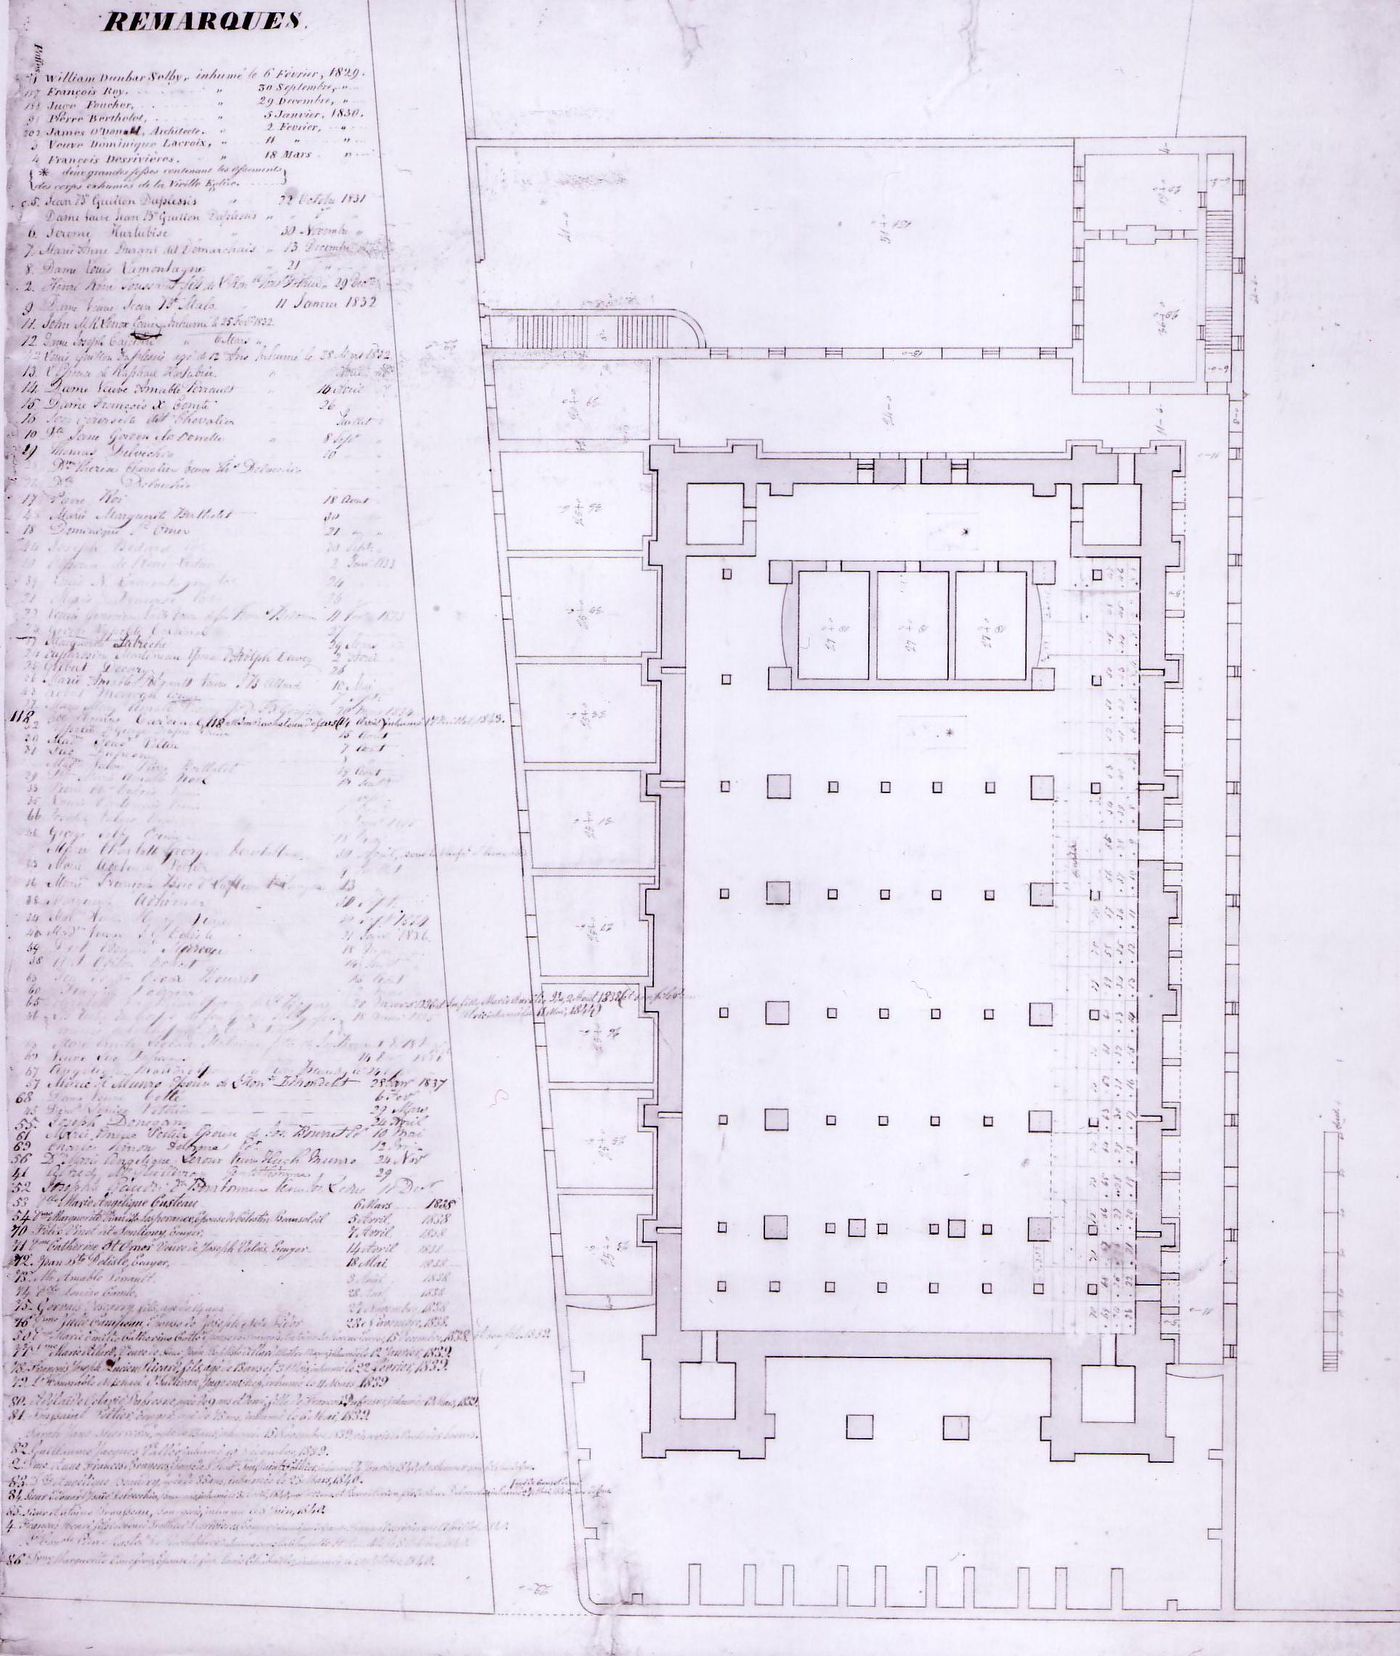 Plan for Notre-Dame de Montréal showing the crypt